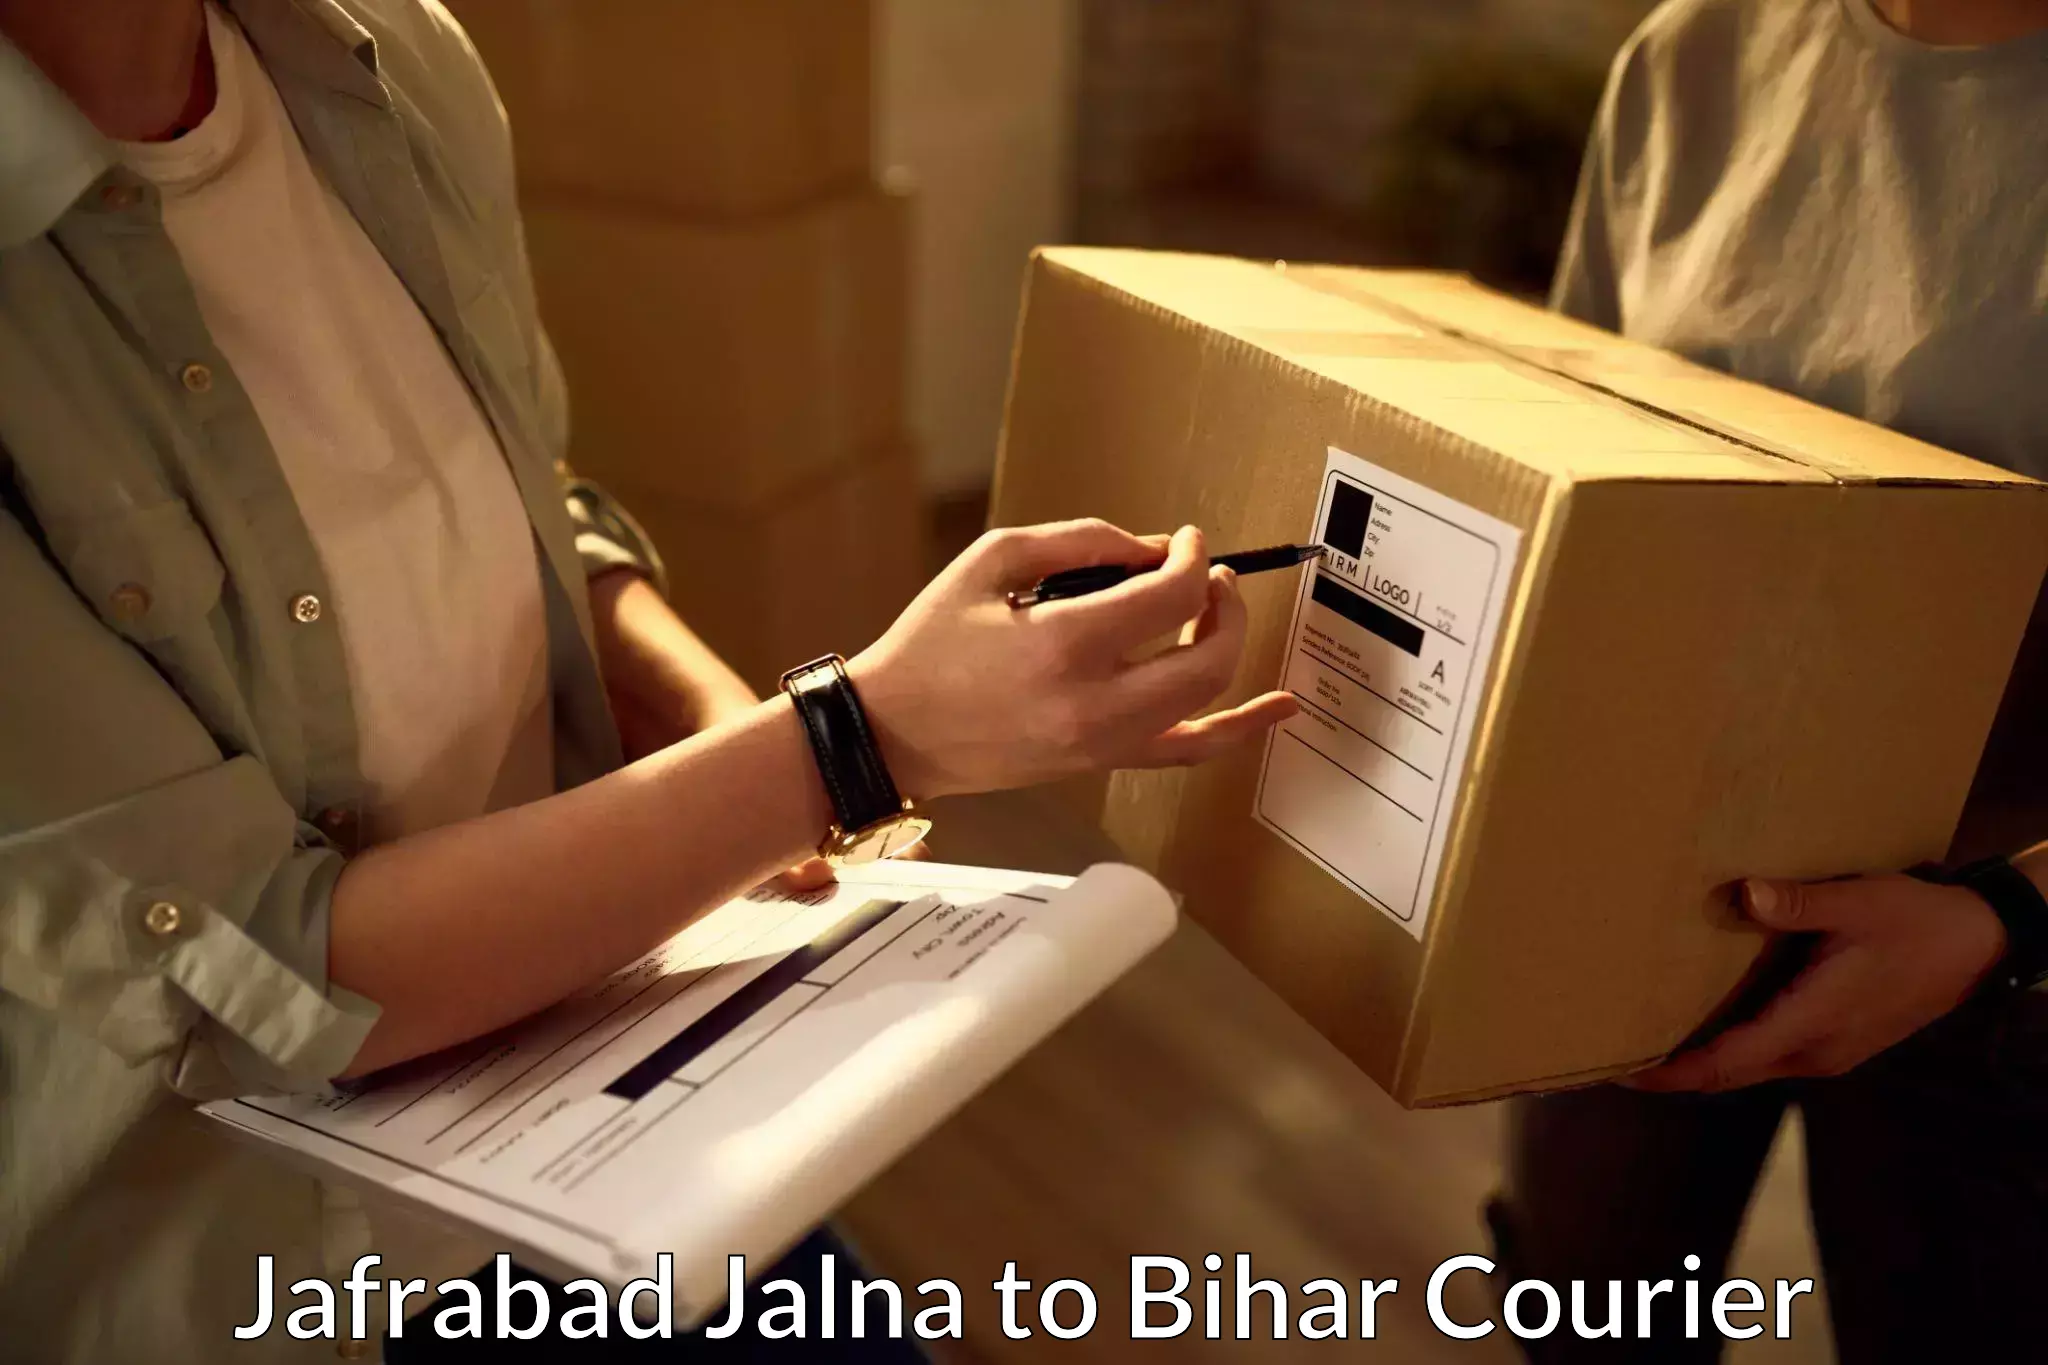 Rural area delivery in Jafrabad Jalna to Bihar